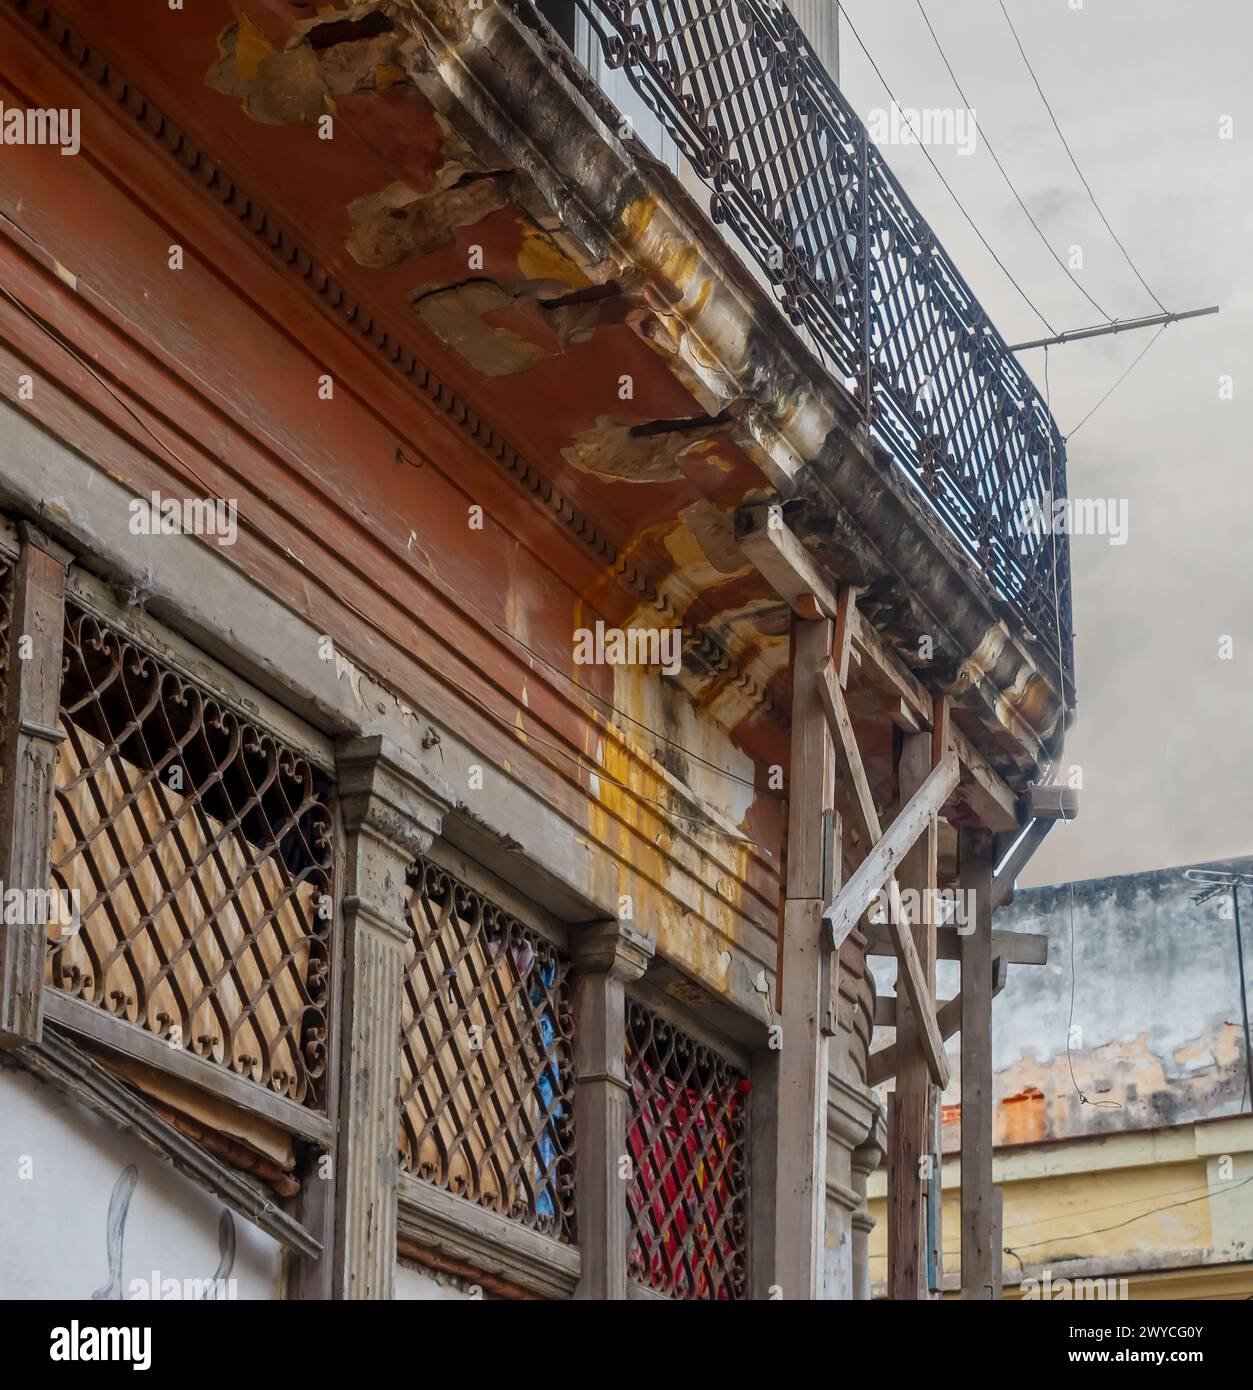 Structure de support en bois dans un balcon endommagé d'un bâtiment à la Havane, Cuba Banque D'Images